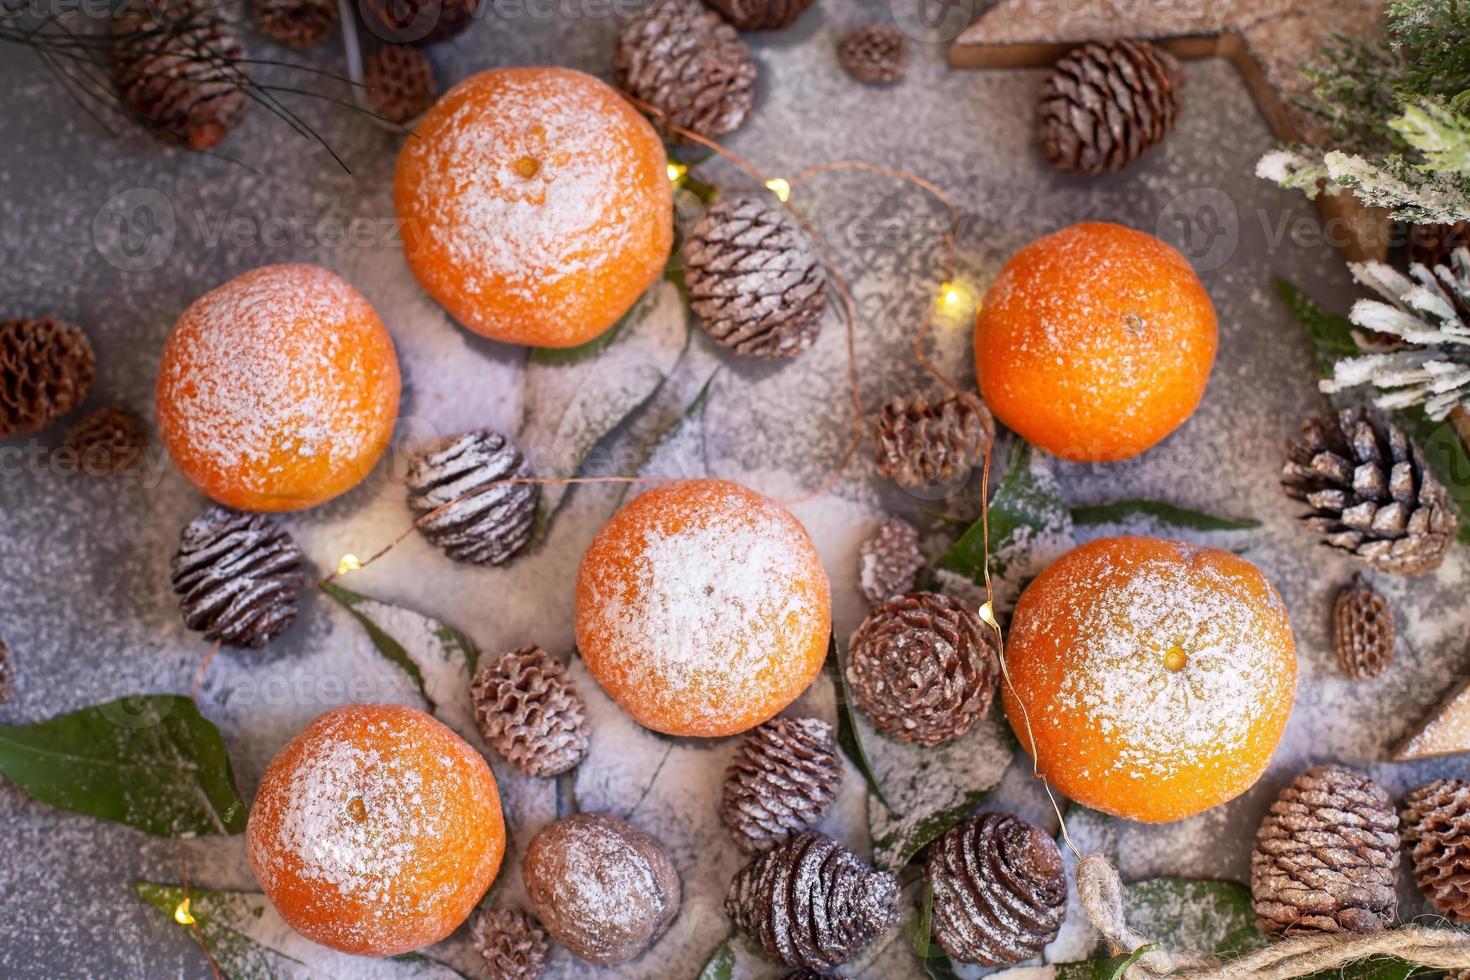 mandarini arancioni su sfondo grigio nell'arredamento di Capodanno con pigne marroni e foglie verdi. decorazione natalizia con mandarini. deliziosa clementina dolce. foto